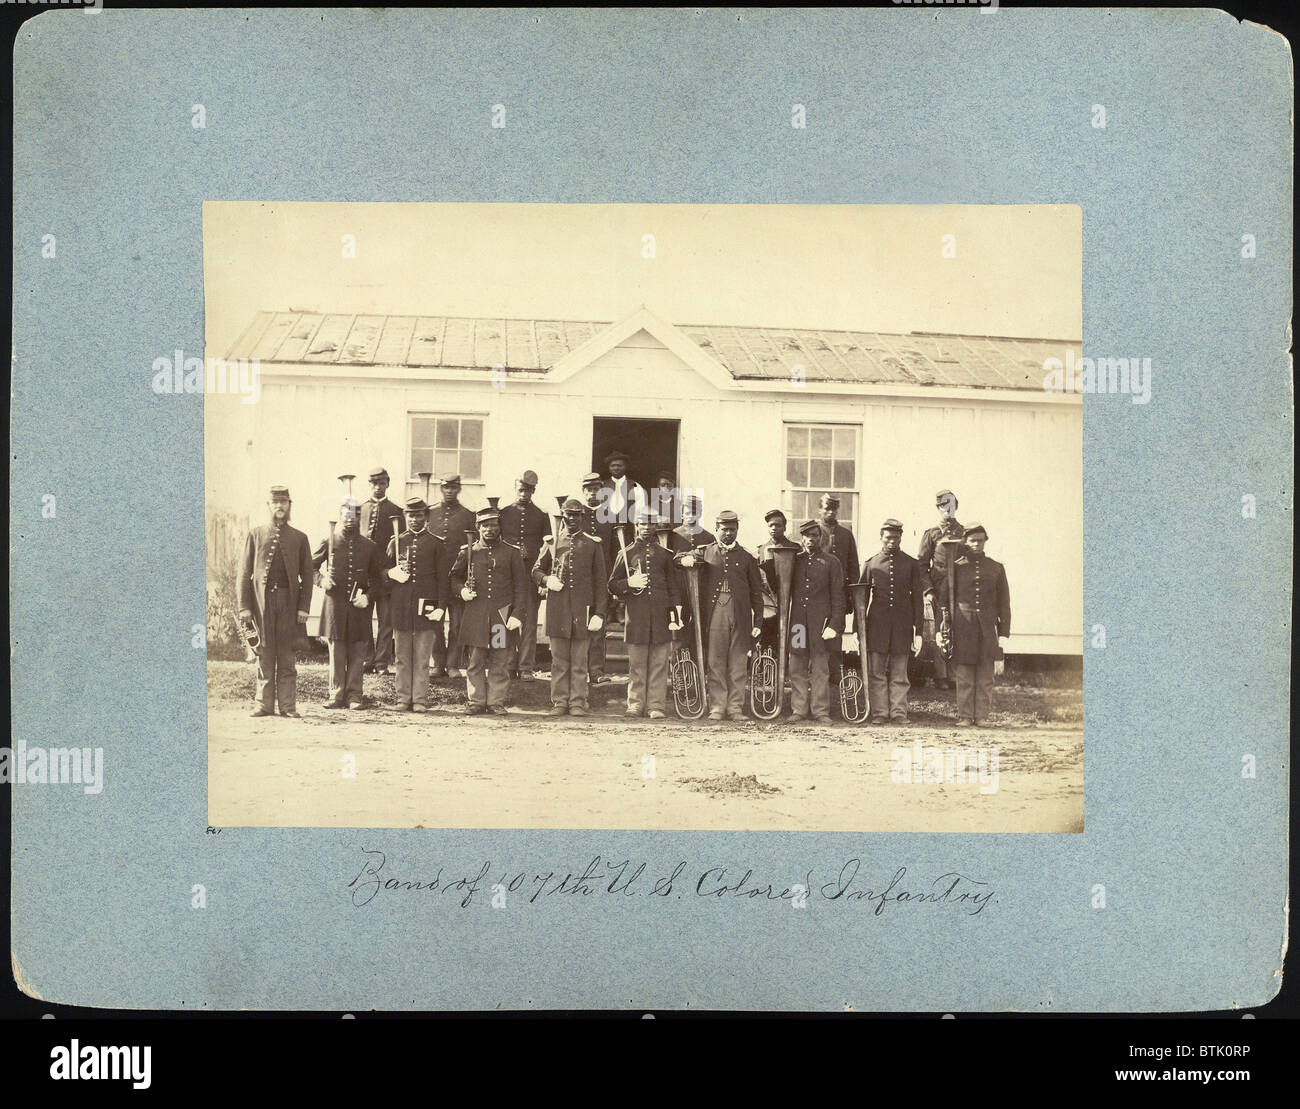 Der Bürgerkrieg, Gruppe 21 afrikanischen amerikanischen Männer halten Musikinstrumente, Titel: "Band der 107. farbigen Infanterieregiments", Arlington, Virginia, Foto von William M. Smith, 1865. Stockfoto